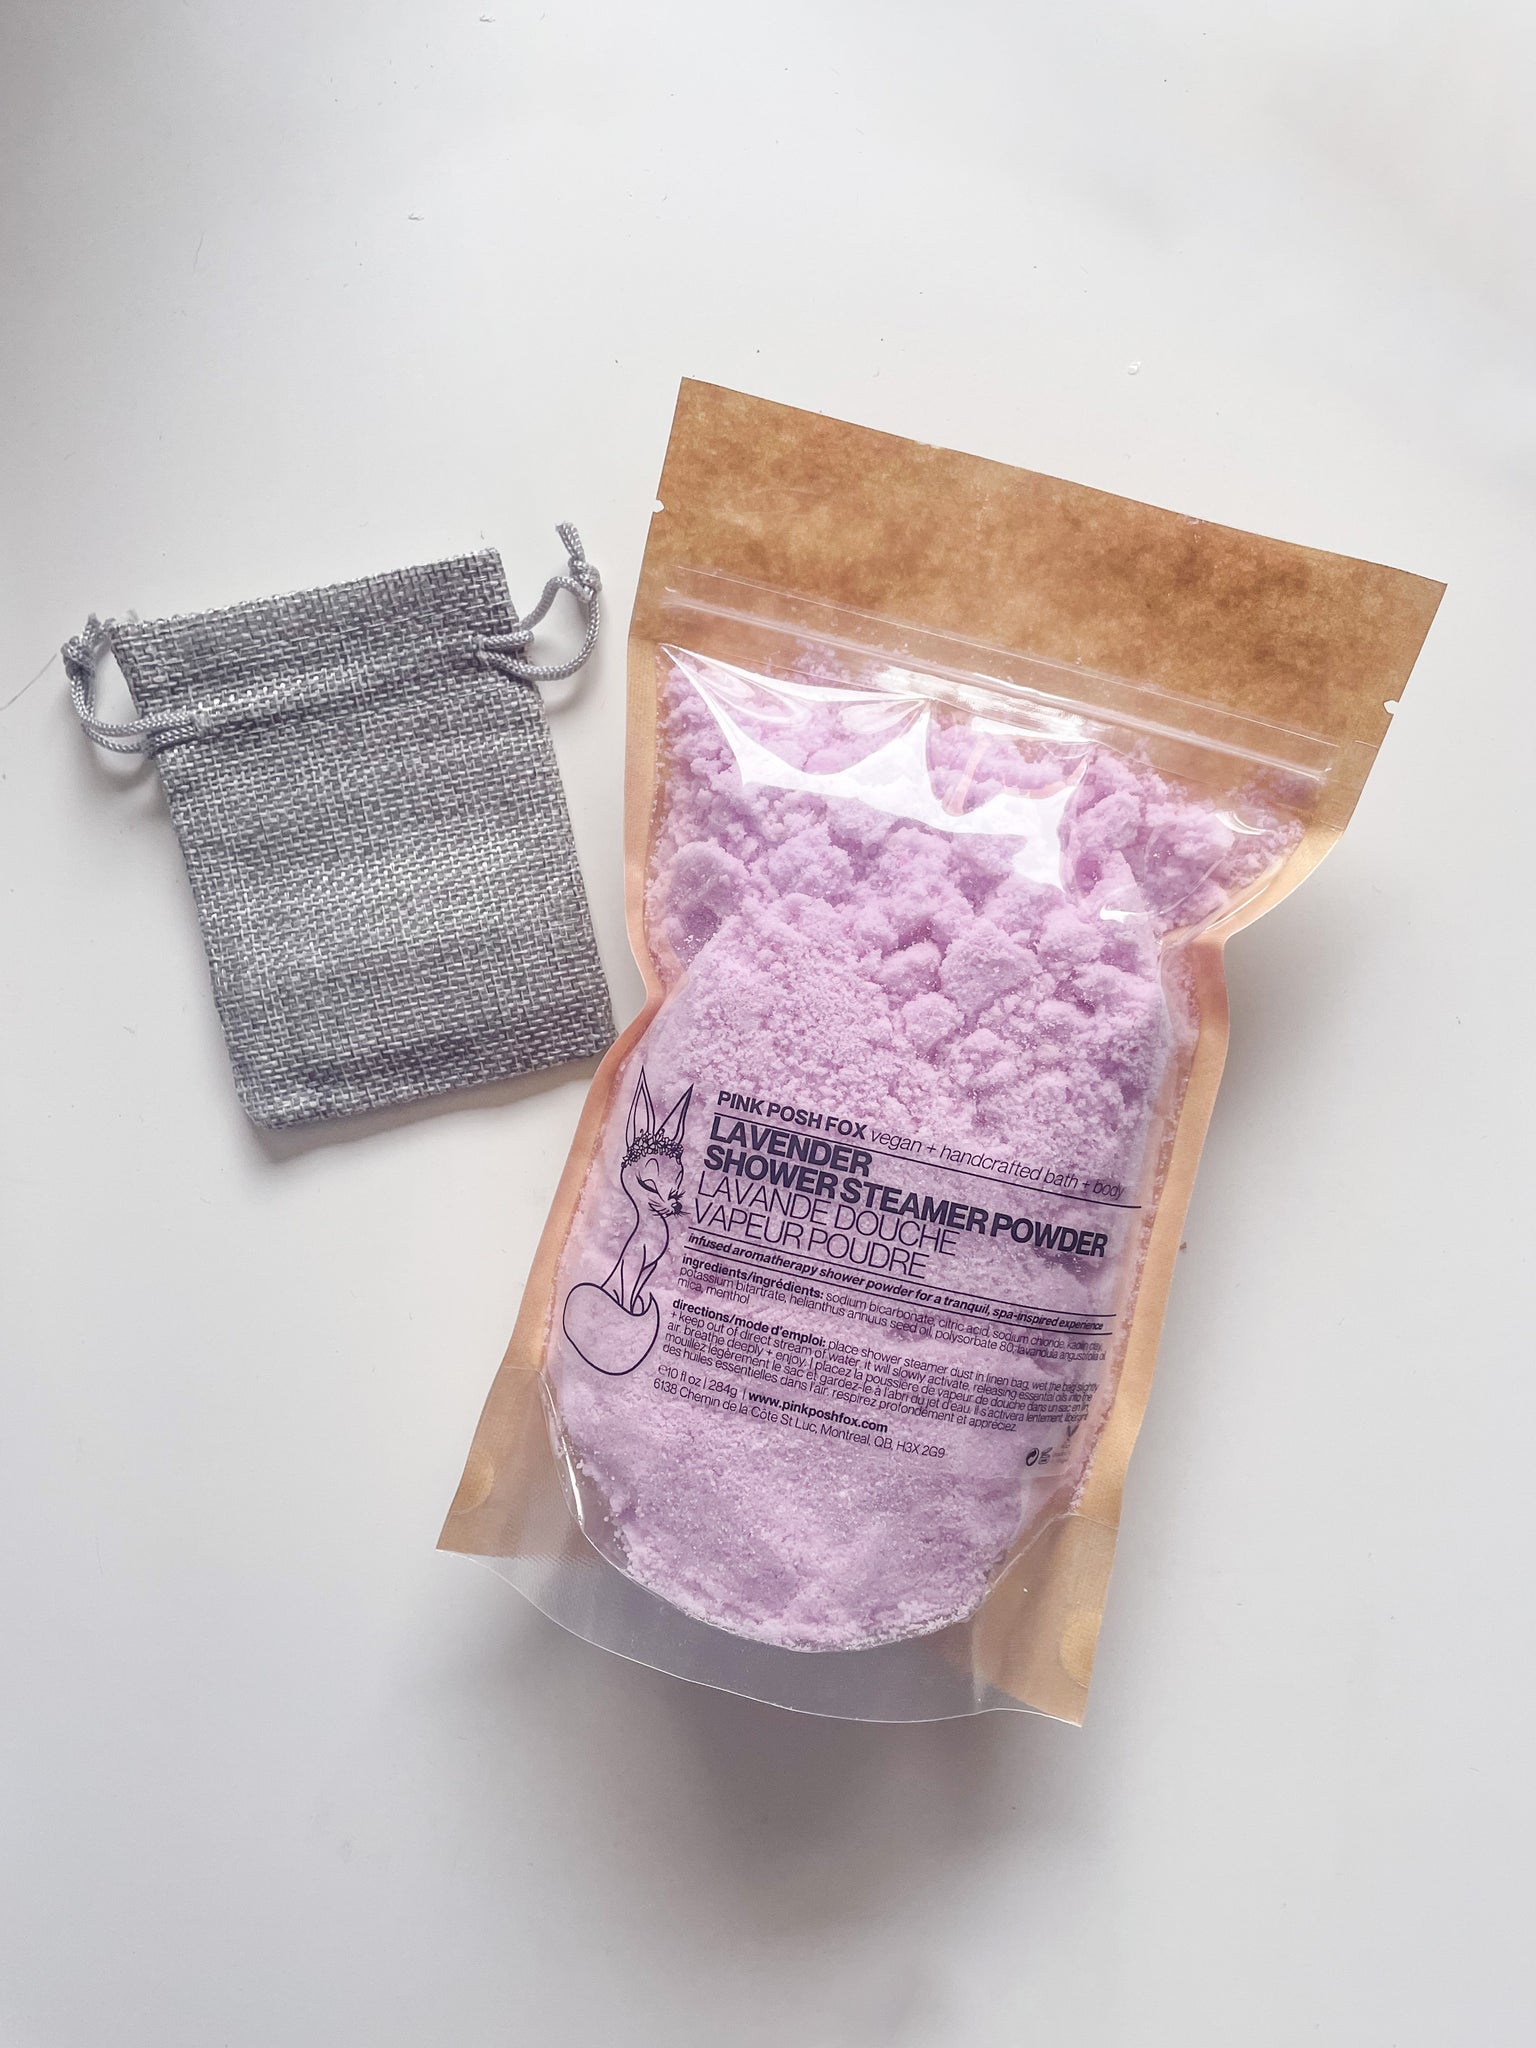 Lavender Shower Steamer Powder with Linen Bag